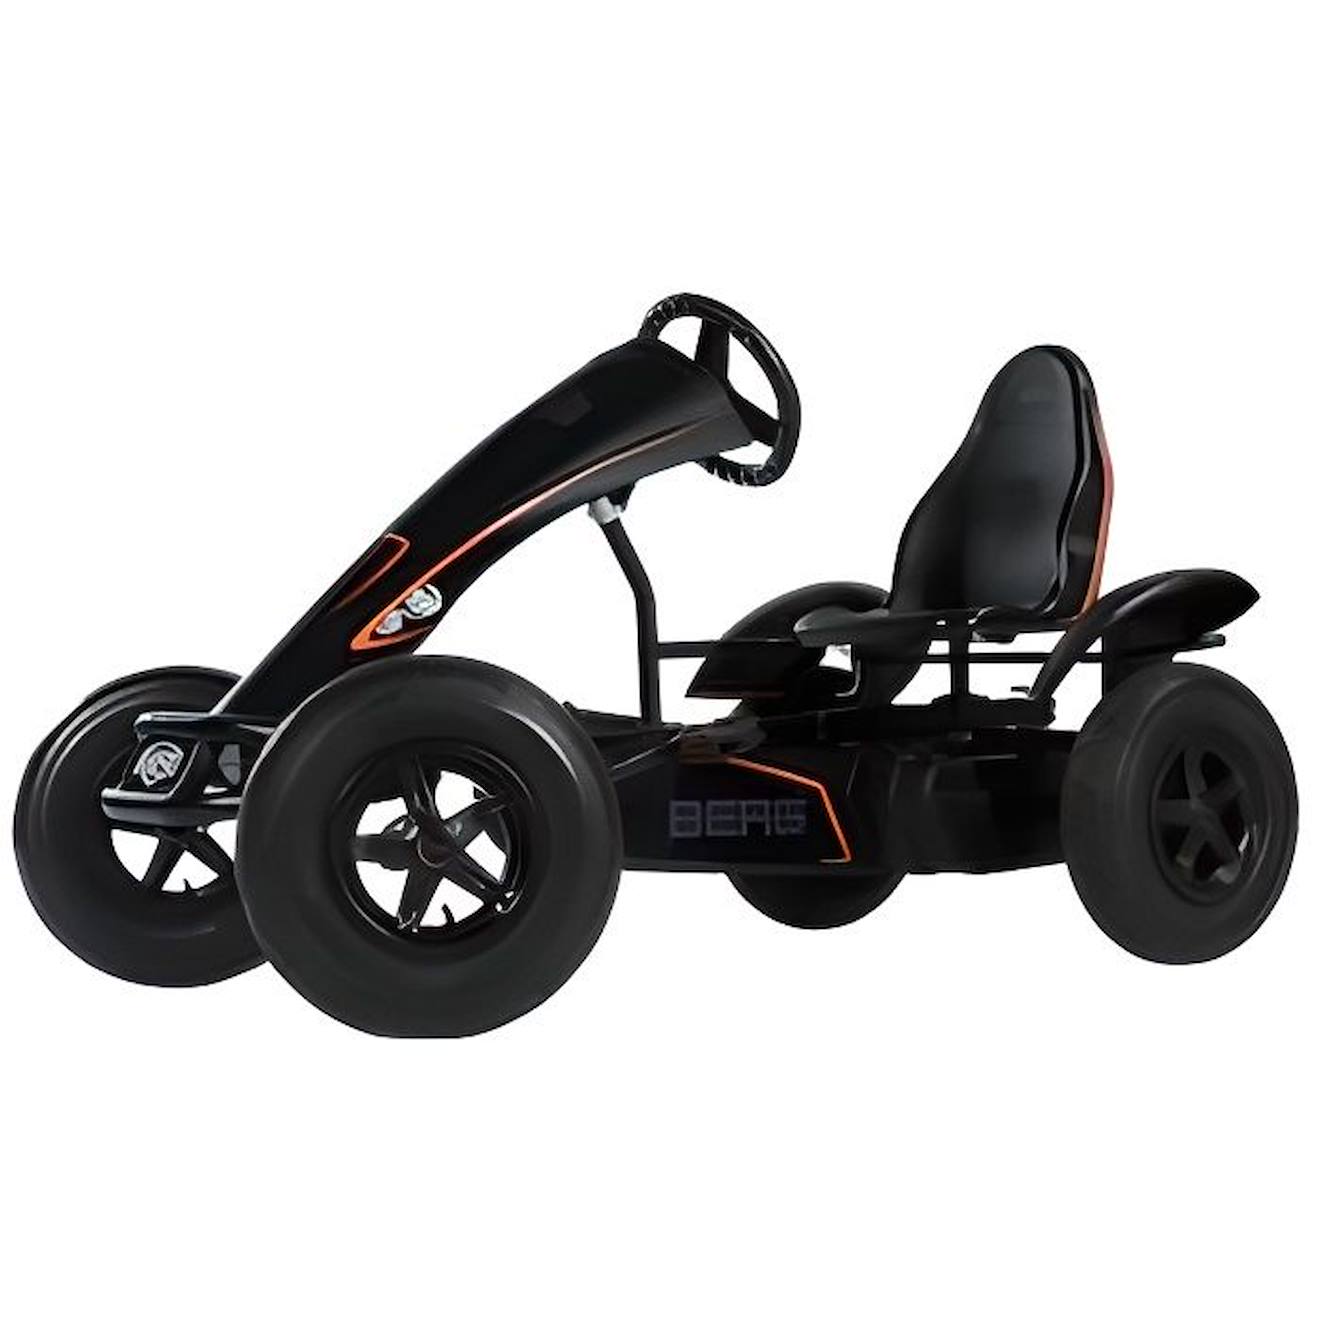 Kart À Pédales - Berg Toys - Black Edition Bfr - Moyeu Bfr - Essieu Oscillant - Garde-boue Arrières 